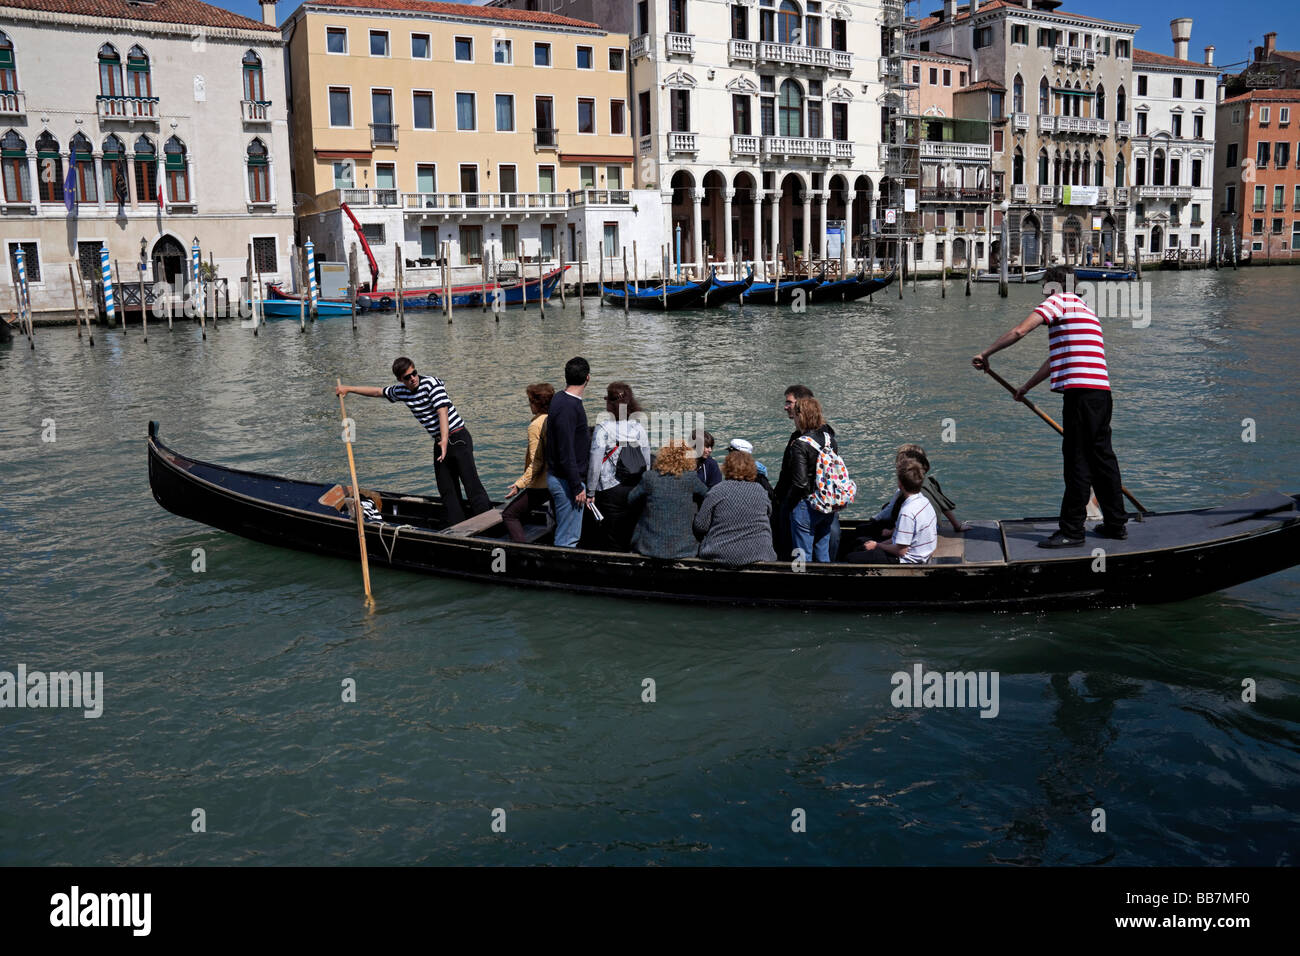 Les passagers sur le canal de passage Traghetto, Venise, Italie Banque D'Images